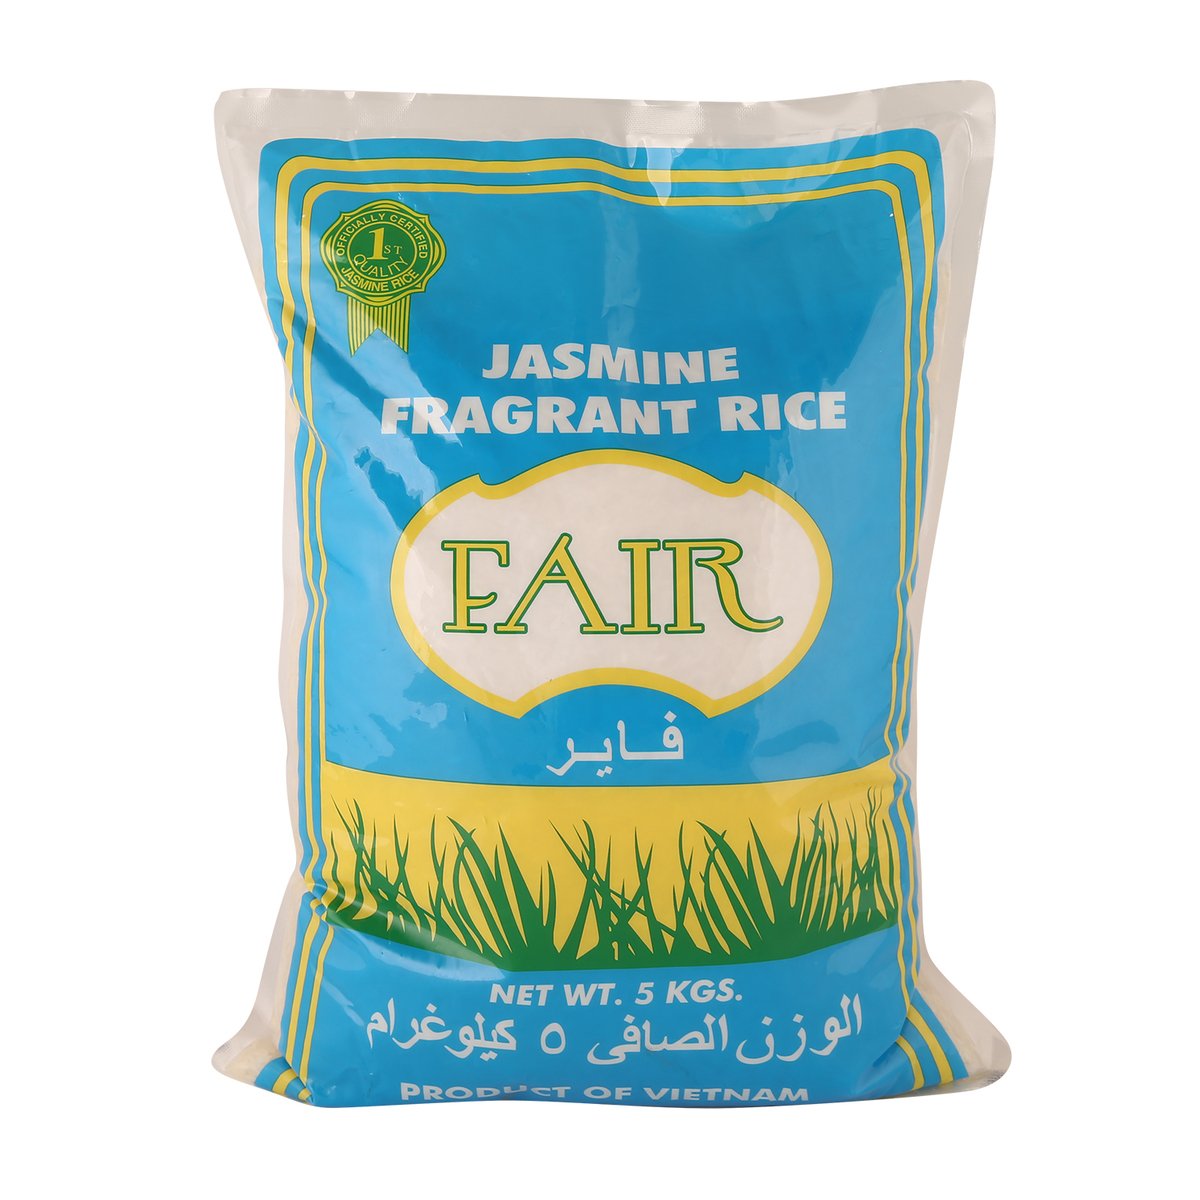 Fair Jasmine Fragrant Rice 5kg